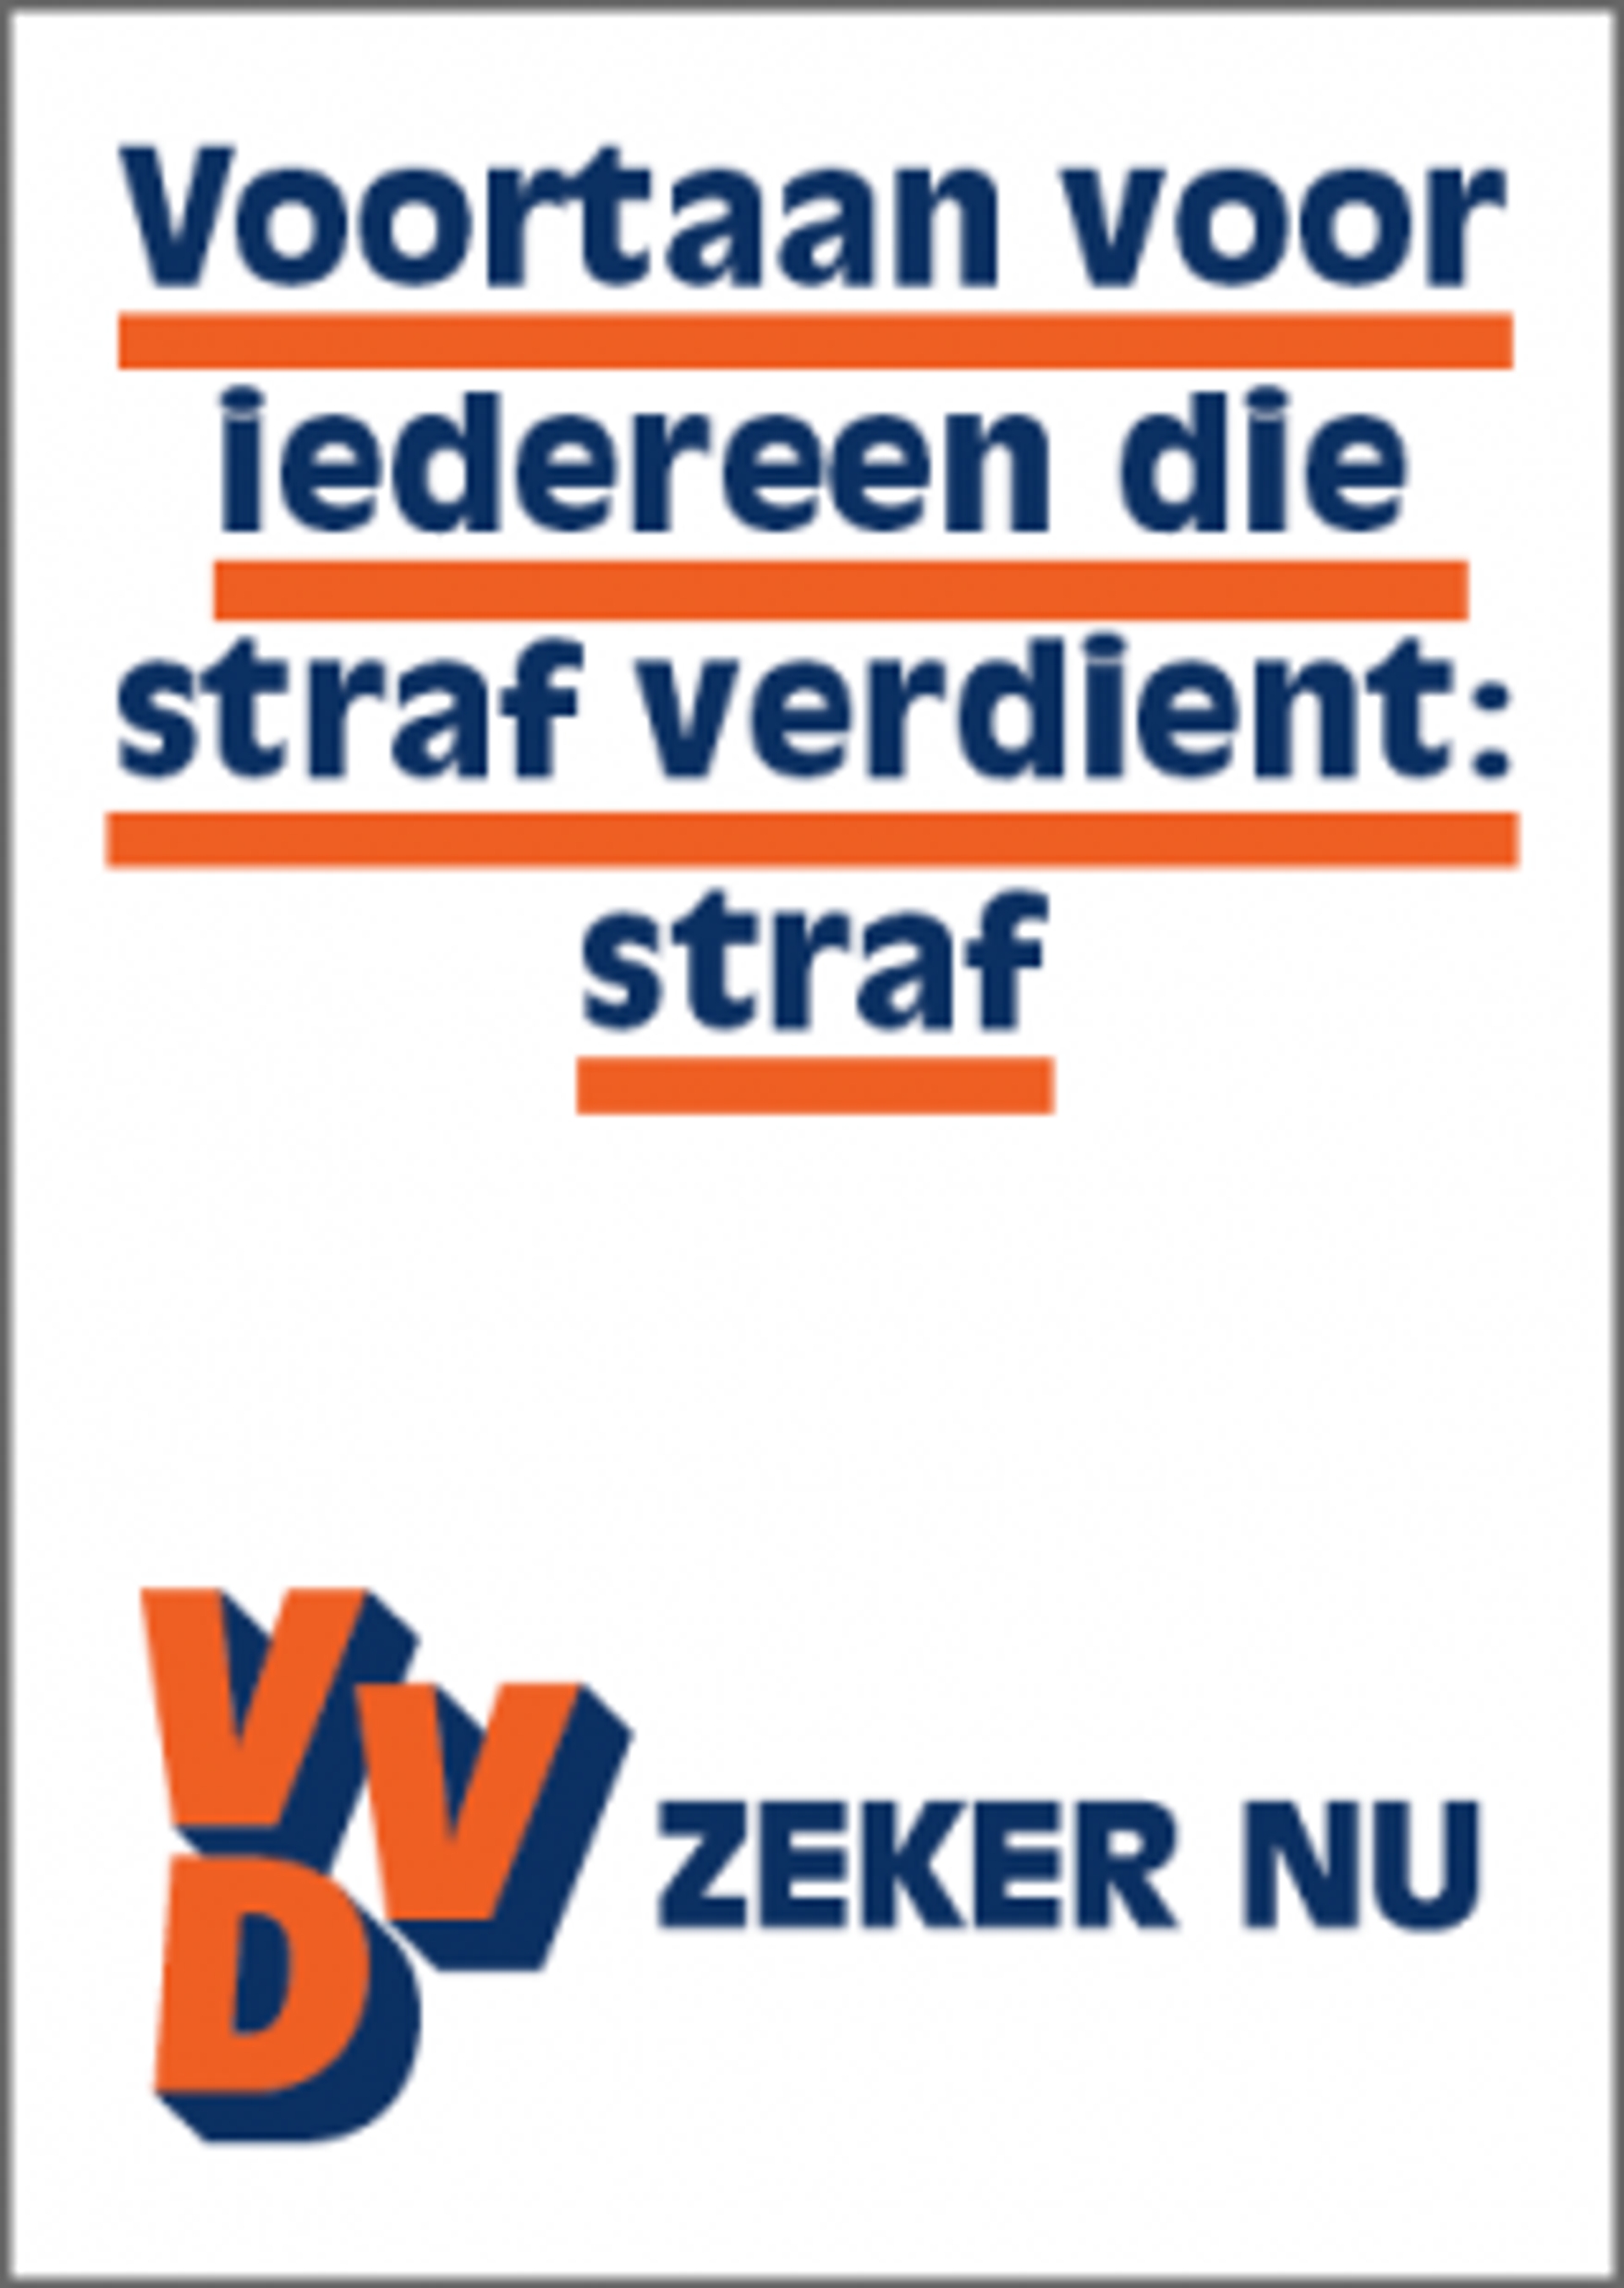 Poster_VVD